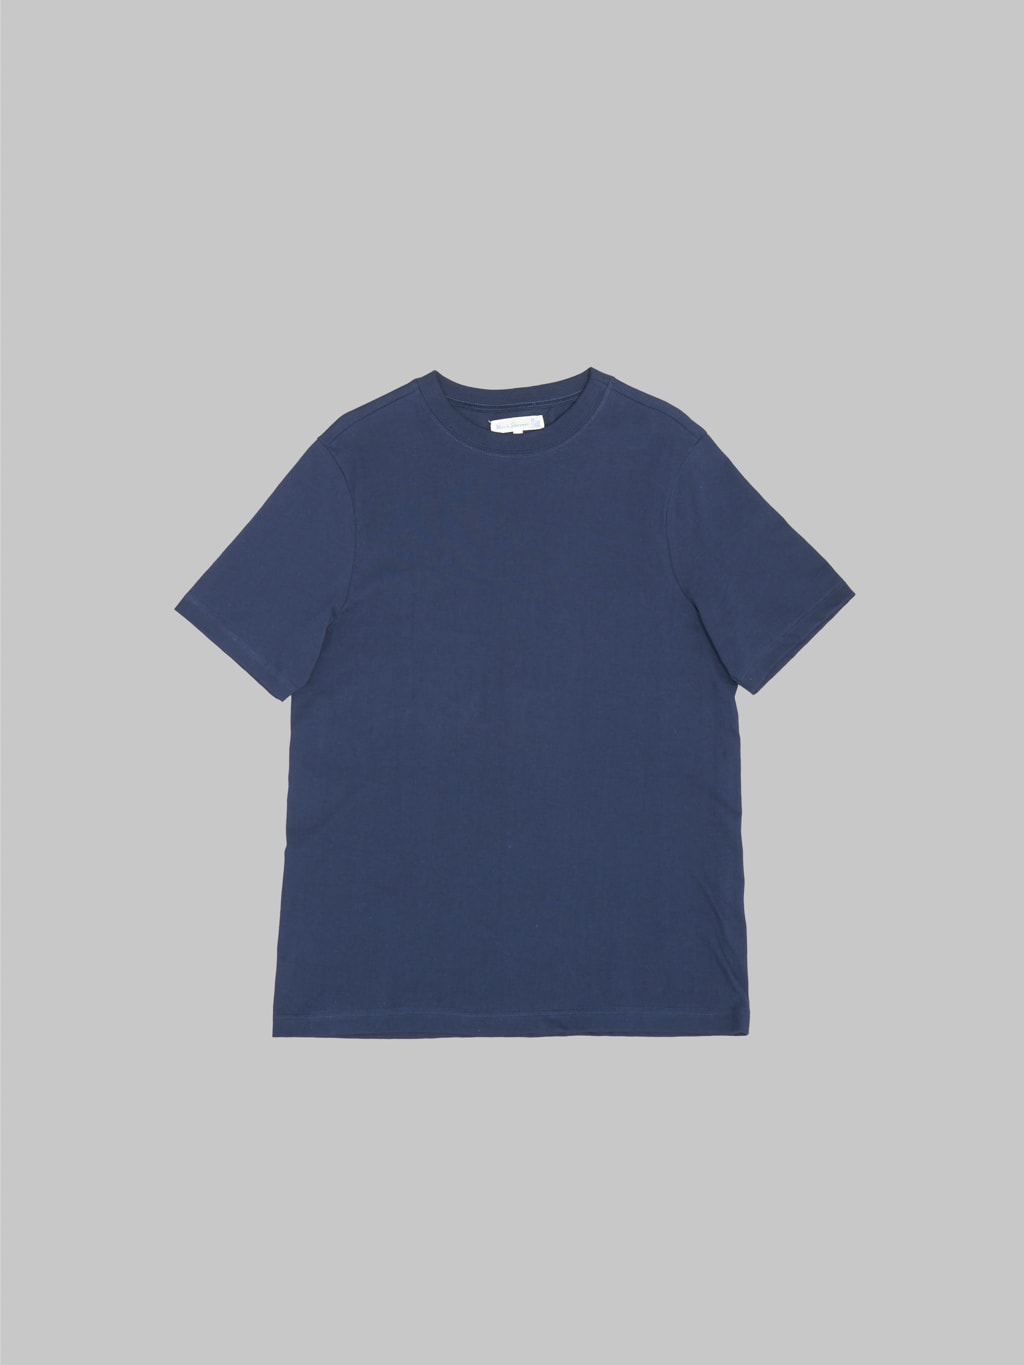 Merz b. Schwanen 1940s 5.5oz Loopwheeled Relaxed Fit T-Shirt Ink Blue